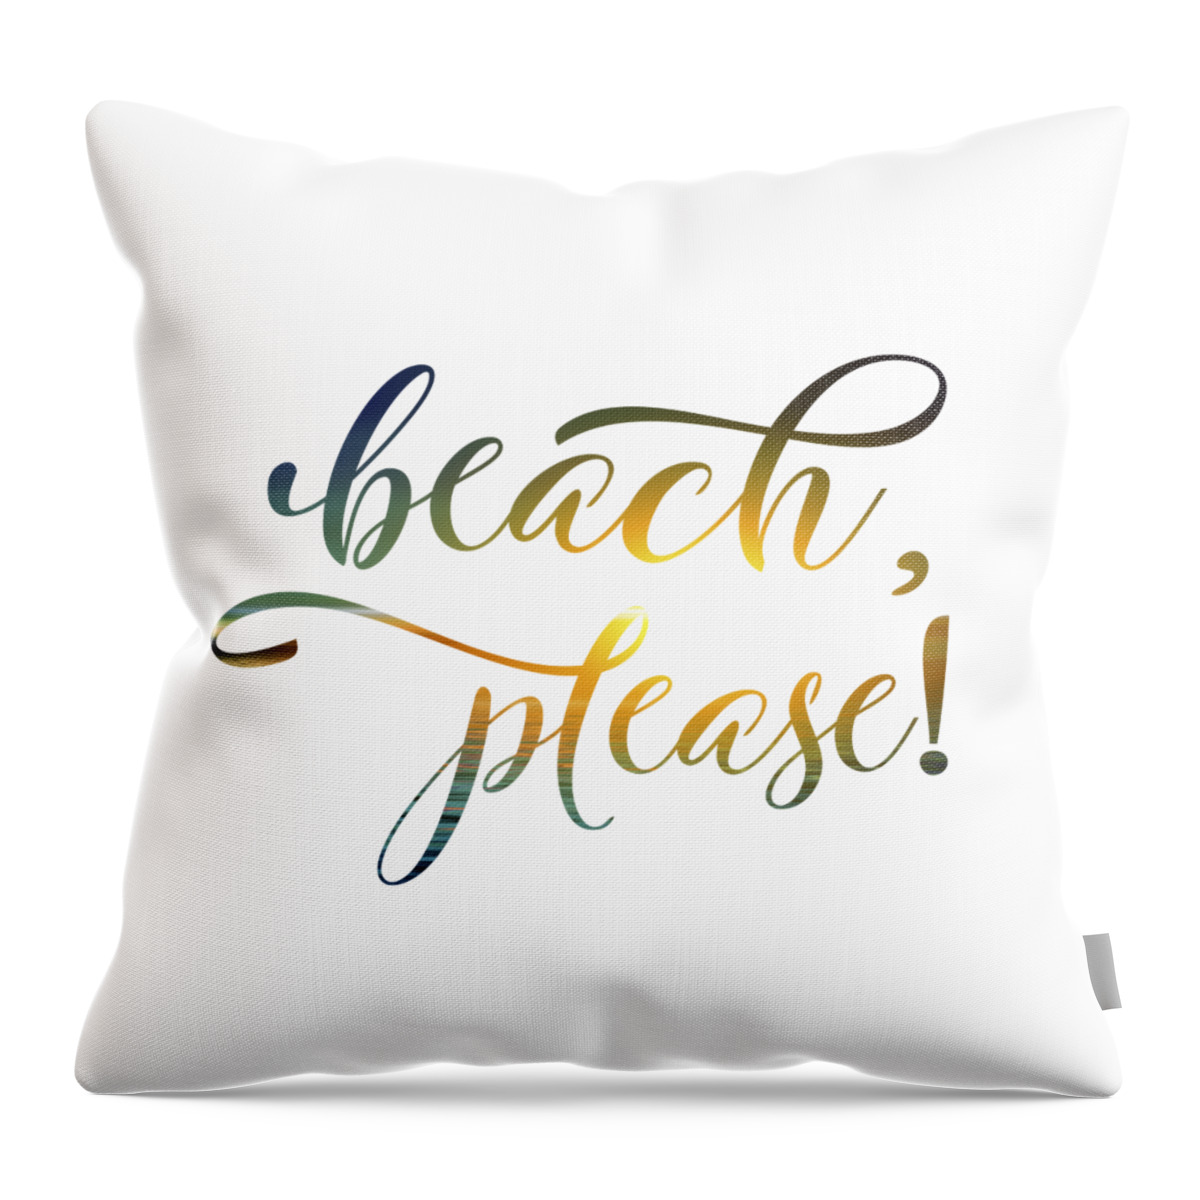 Beach Please Throw Pillow featuring the digital art Beach Please by Leah McPhail